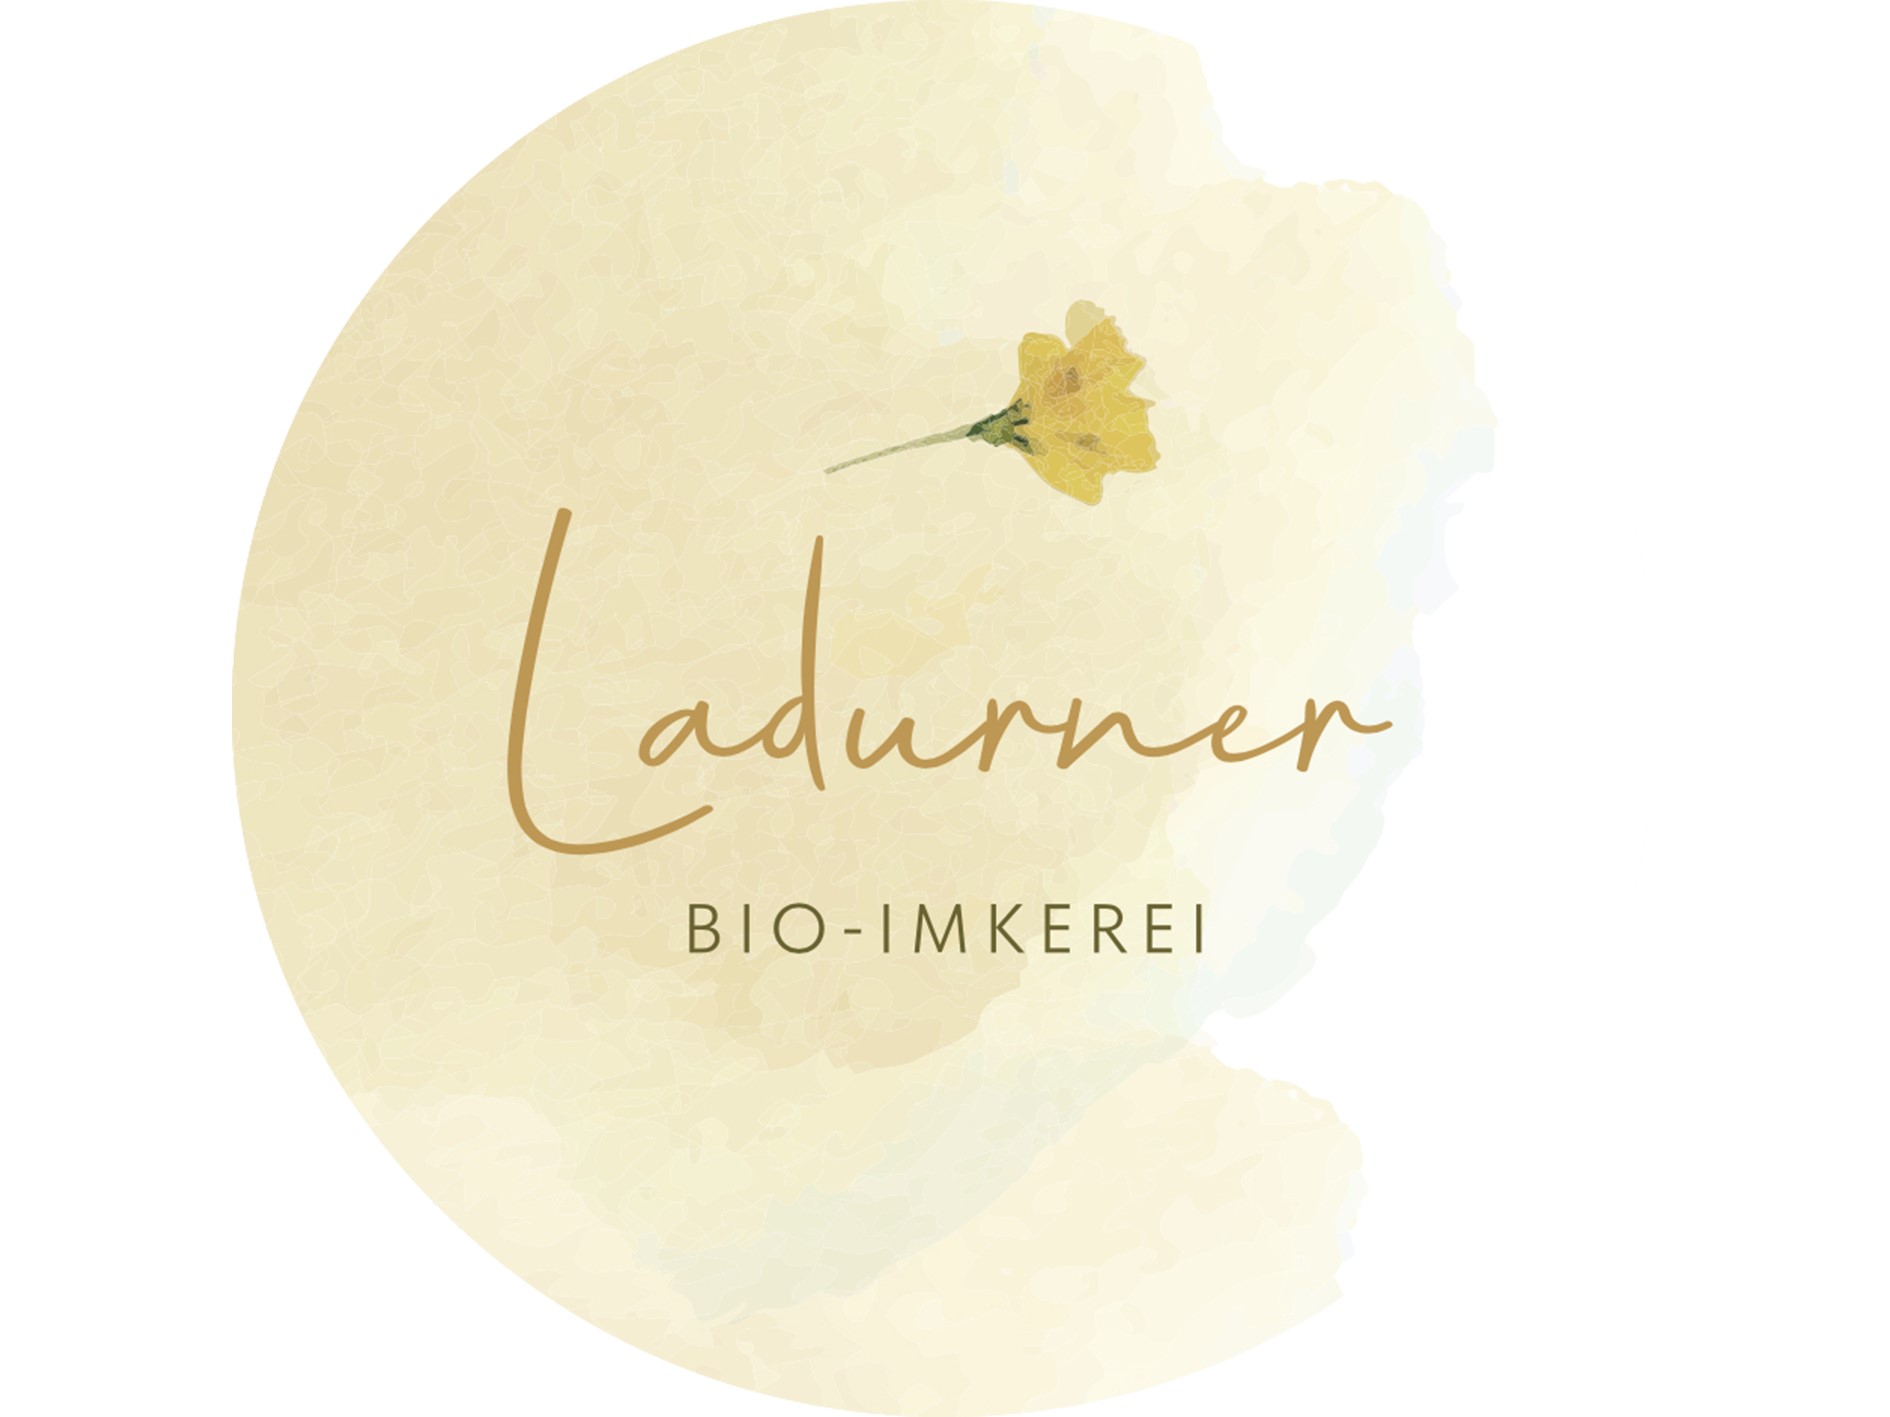 Bio-Imkerei Ladurner